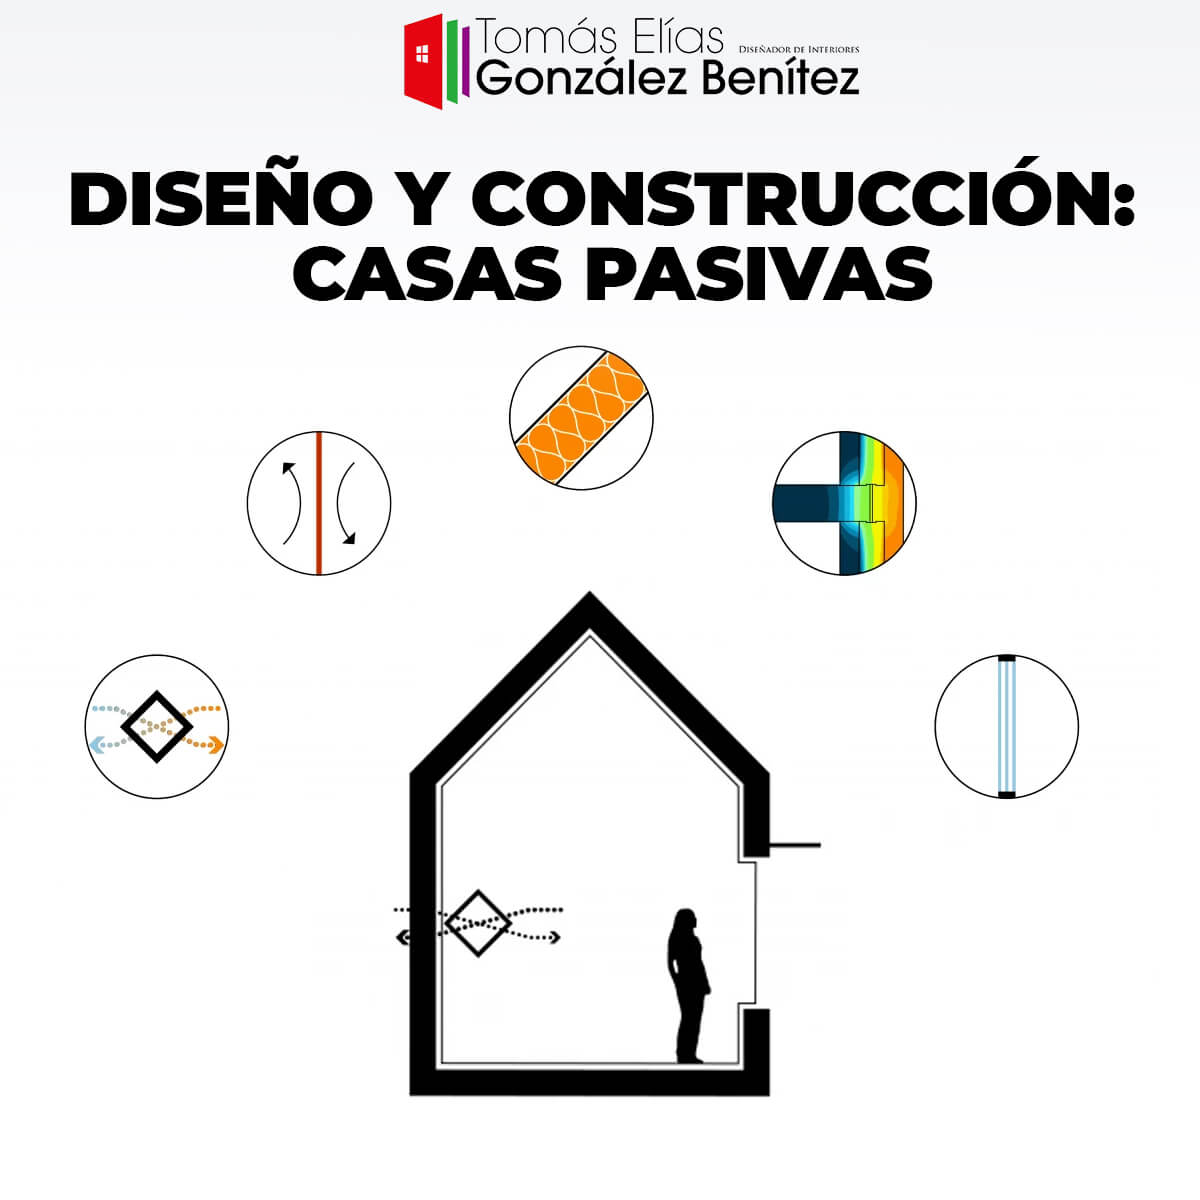 Diseño y Construcción - Casas Pasivas -gonzalezbenitez-tomaselias.com